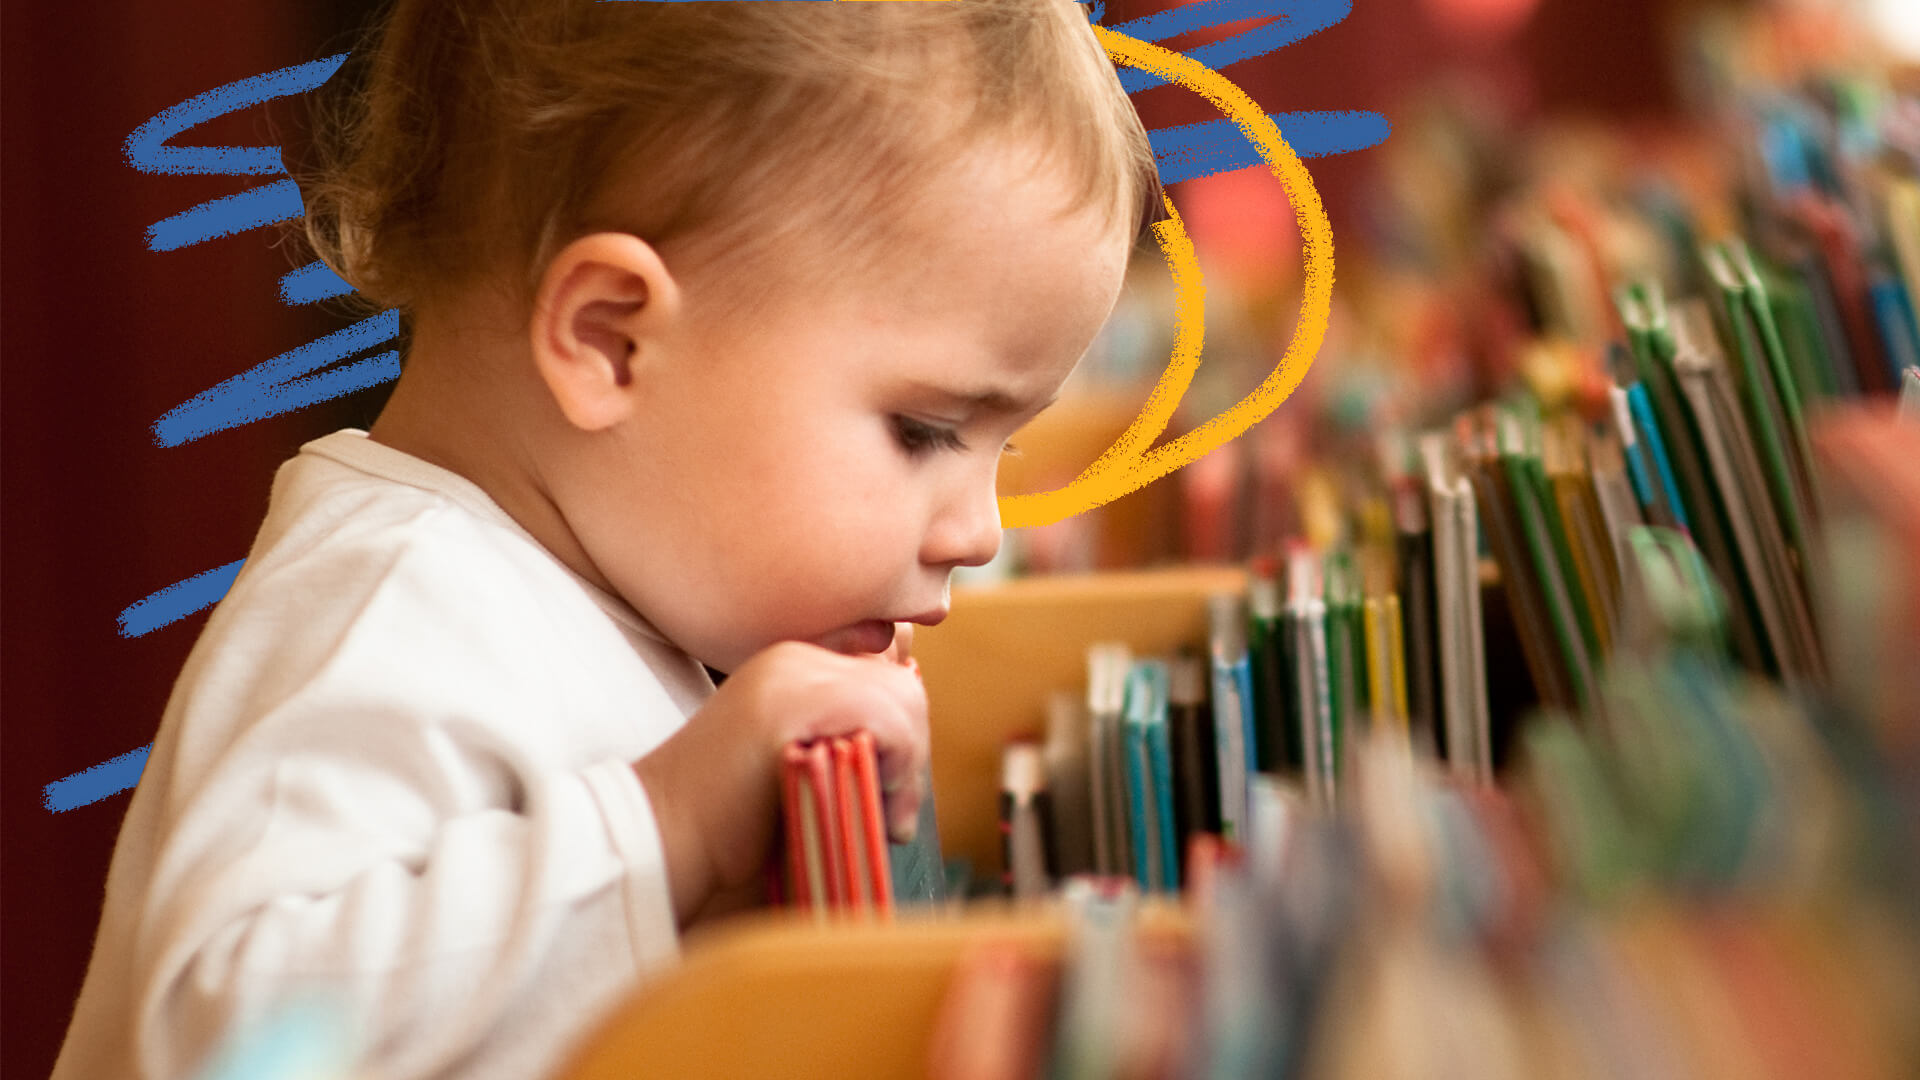 Biblioteca do bebê: uma criança pequena observa de perto e toca alguns livros em uma prateleira